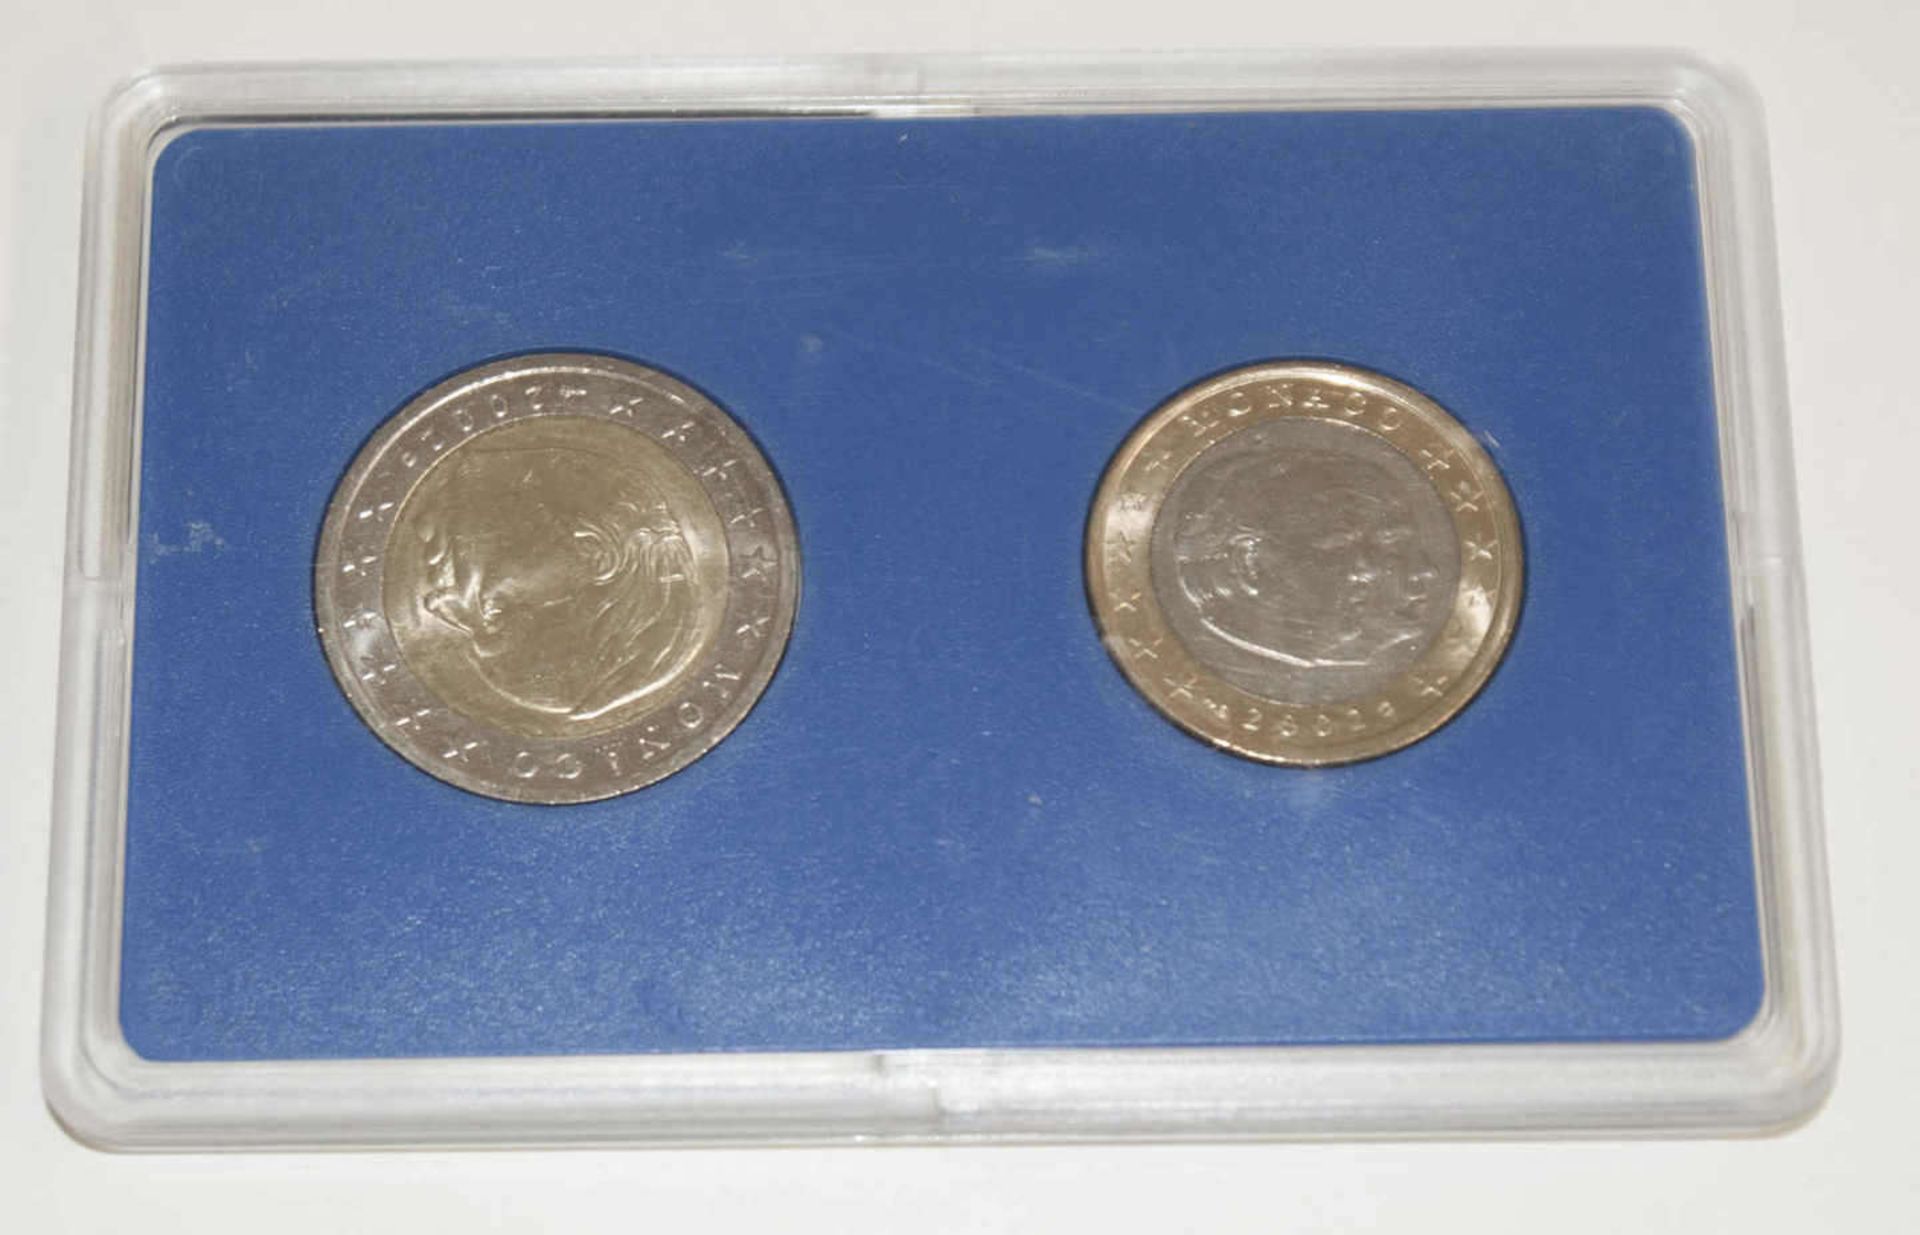 Monaco 2002, 1 und 2 Euro Münze im Original Blister von 2002Monaco 2002, 1 and 2 Euro coin in - Bild 2 aus 2